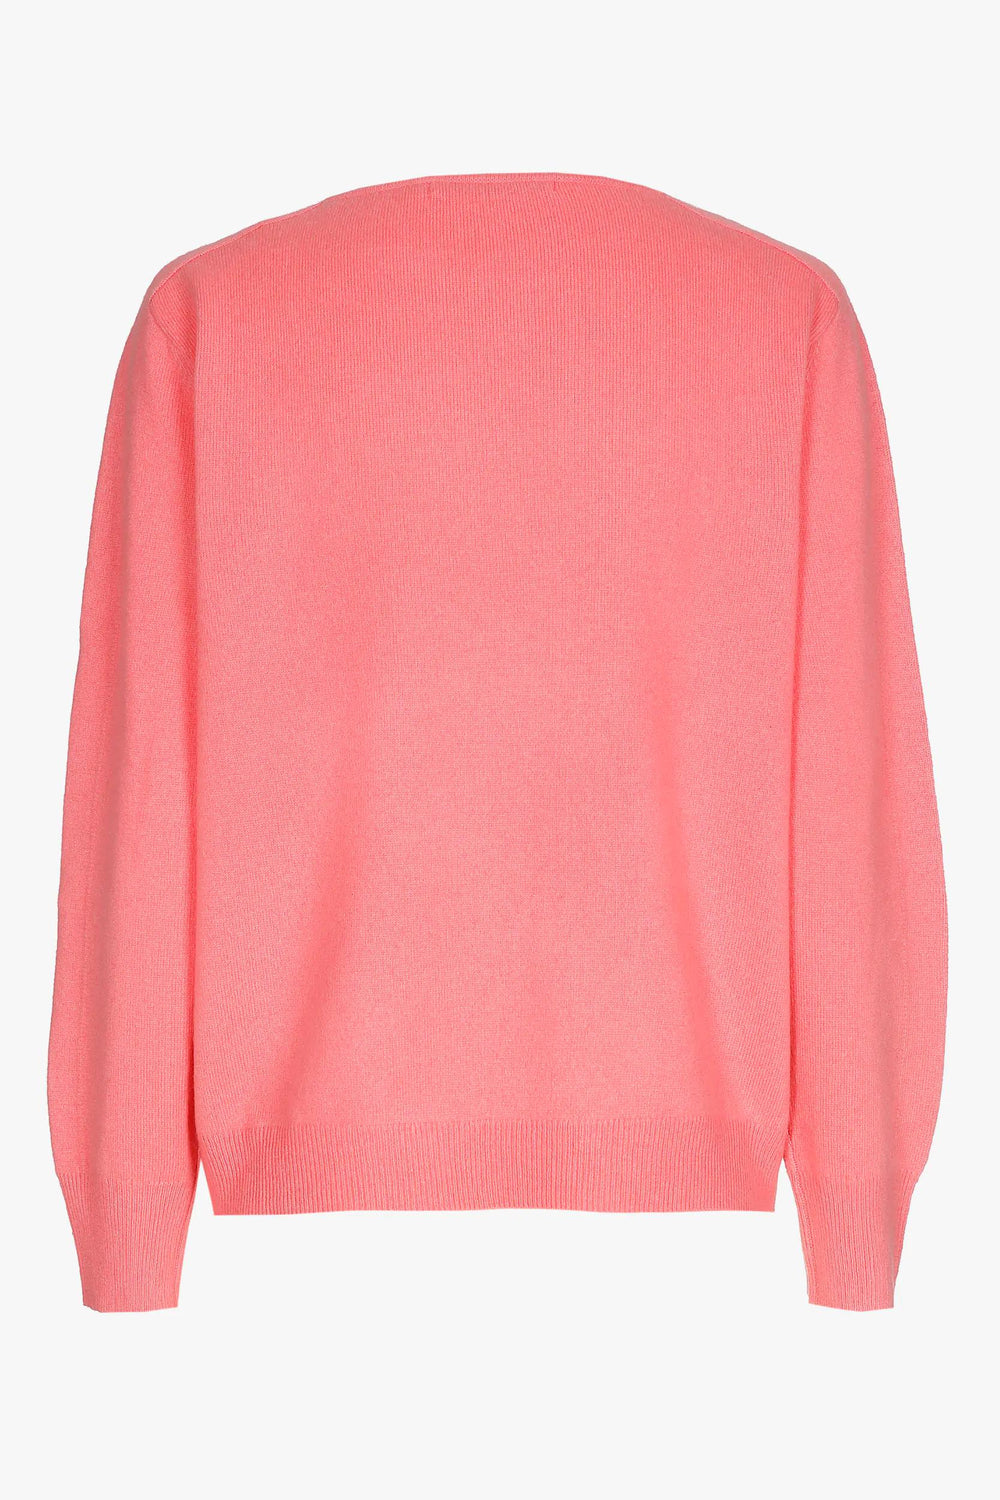 roze soepelvallende trui van kasjmier - xandres - - grote maten - dameskleding - kledingwinkel - herent - leuven